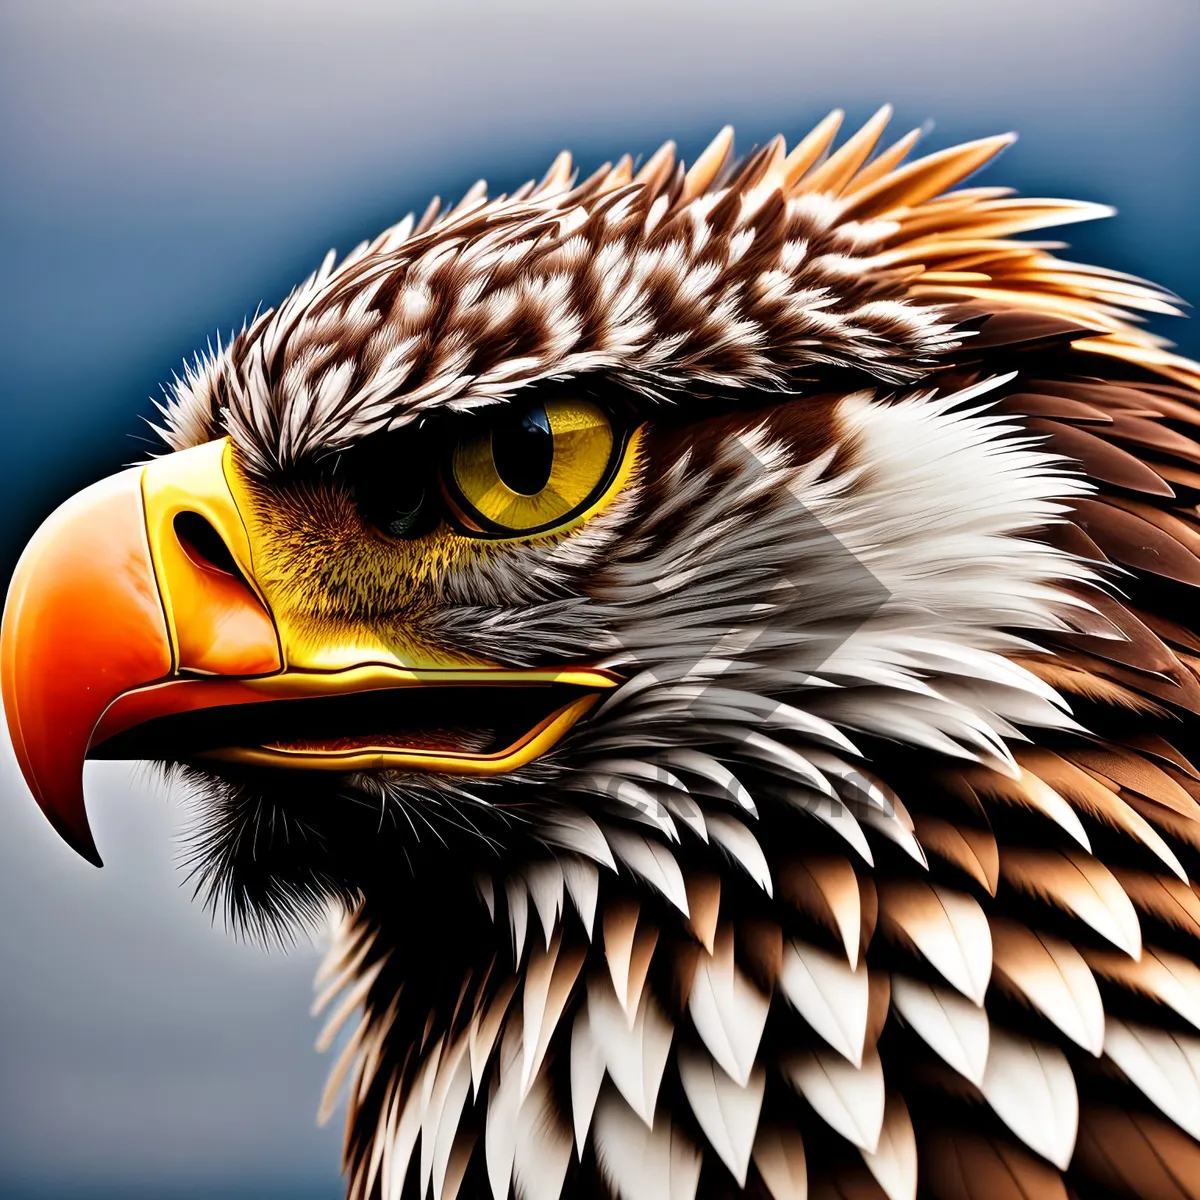 Picture of Majestic Eagle Eye - Fierce Bird of Prey